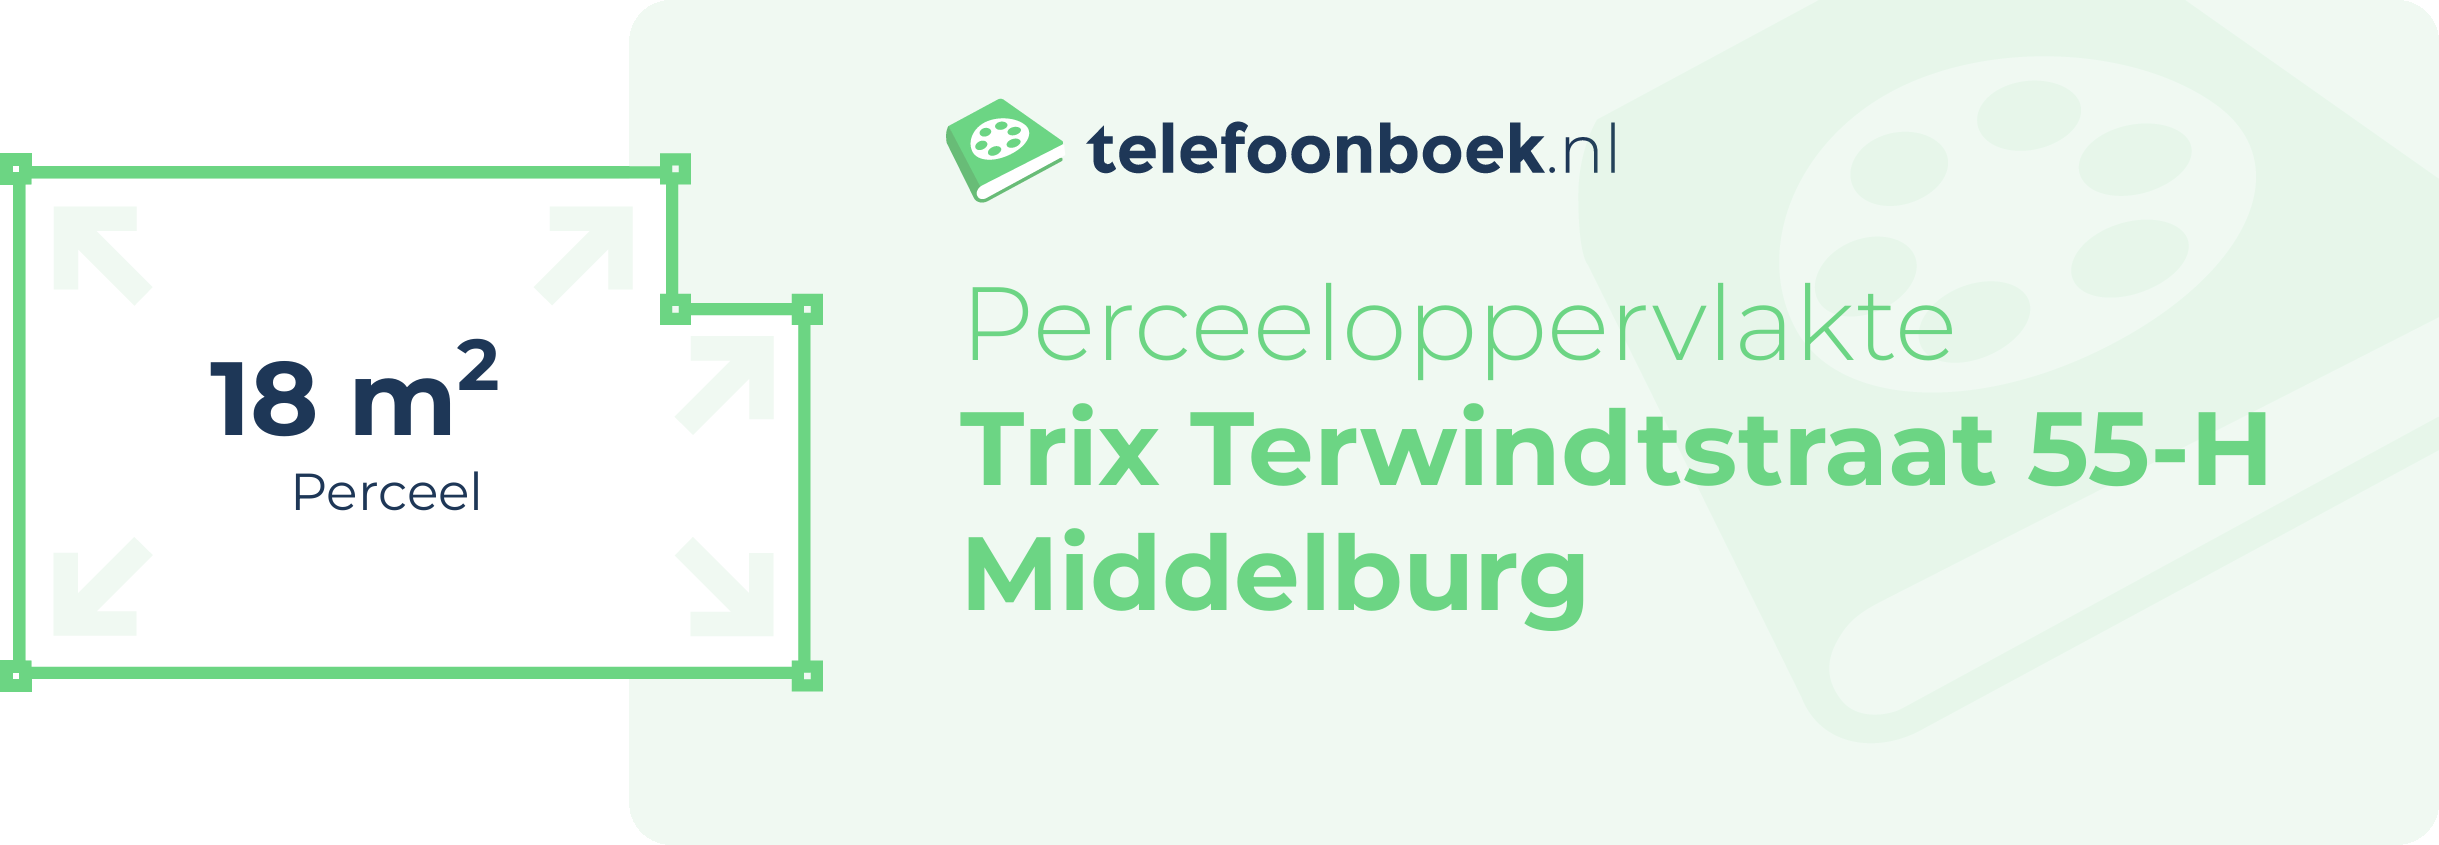 Perceeloppervlakte Trix Terwindtstraat 55-H Middelburg